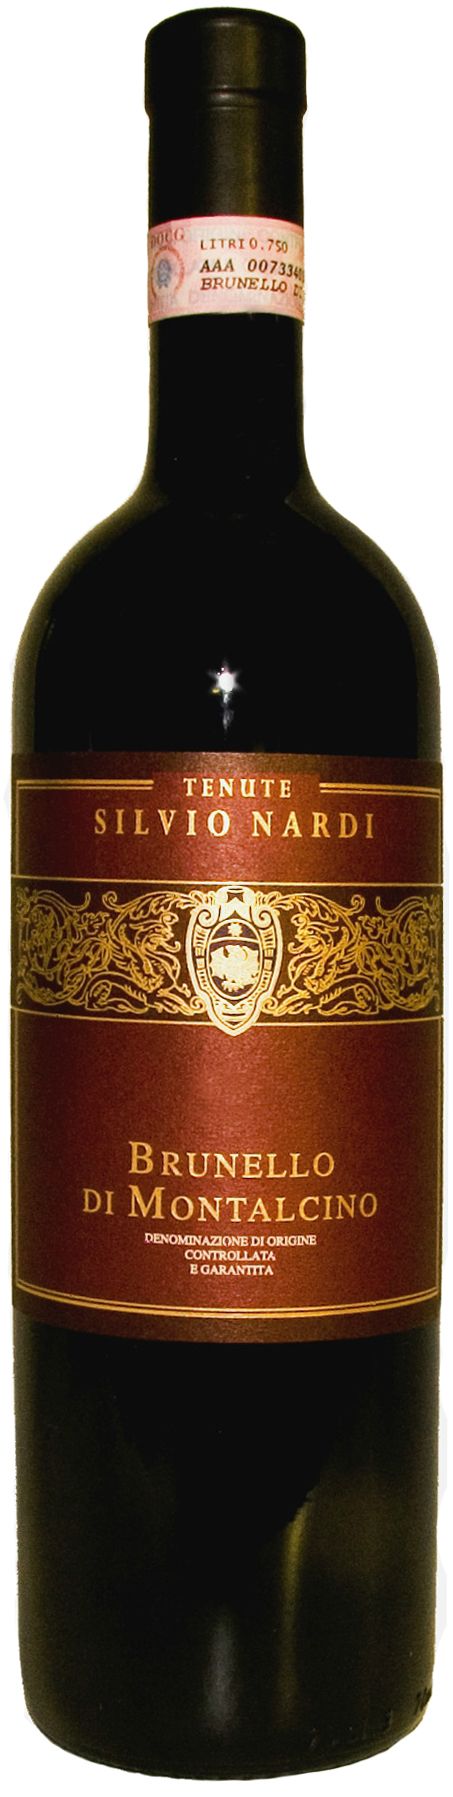 Tenute Silvio Nardi, Brunello Di Montalcino, 2002